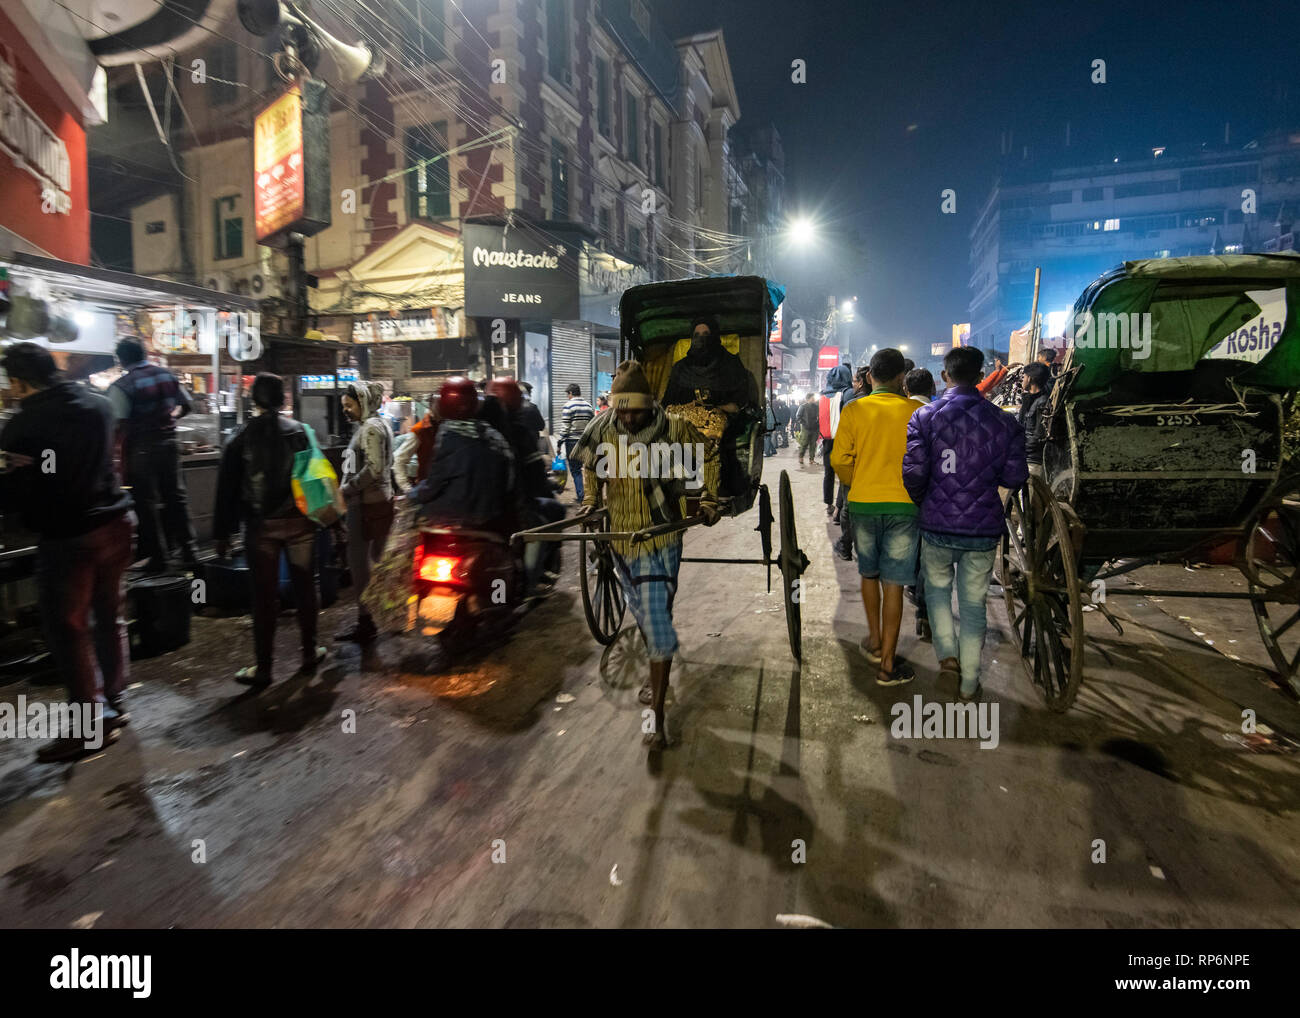 Typische atmosphärischen besetzt in der Nacht laut Zeit Straßenszene in Kolkata mit der lokalen Bevölkerung, Rikschas und Street Food Anbieter. Stockfoto